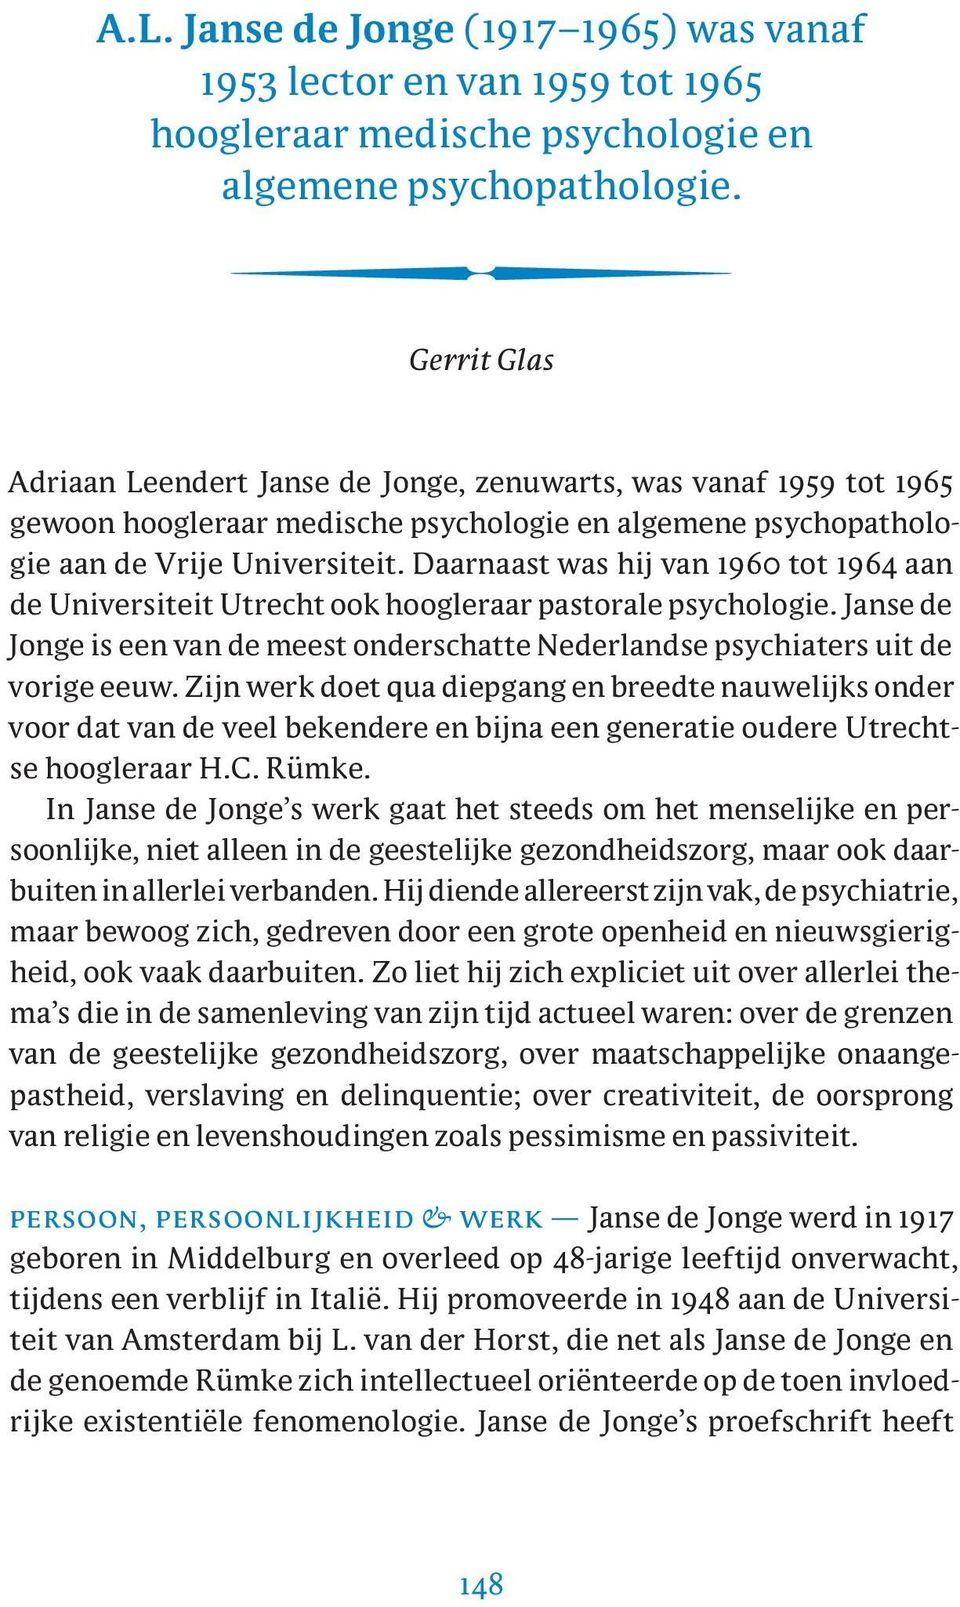 Daarnaast was hij van 1960 tot 1964 aan de Universiteit Utrecht ook hoogleraar pastorale psychologie. Janse de Jonge is een van de meest onderschatte Nederlandse psychiaters uit de vorige eeuw.